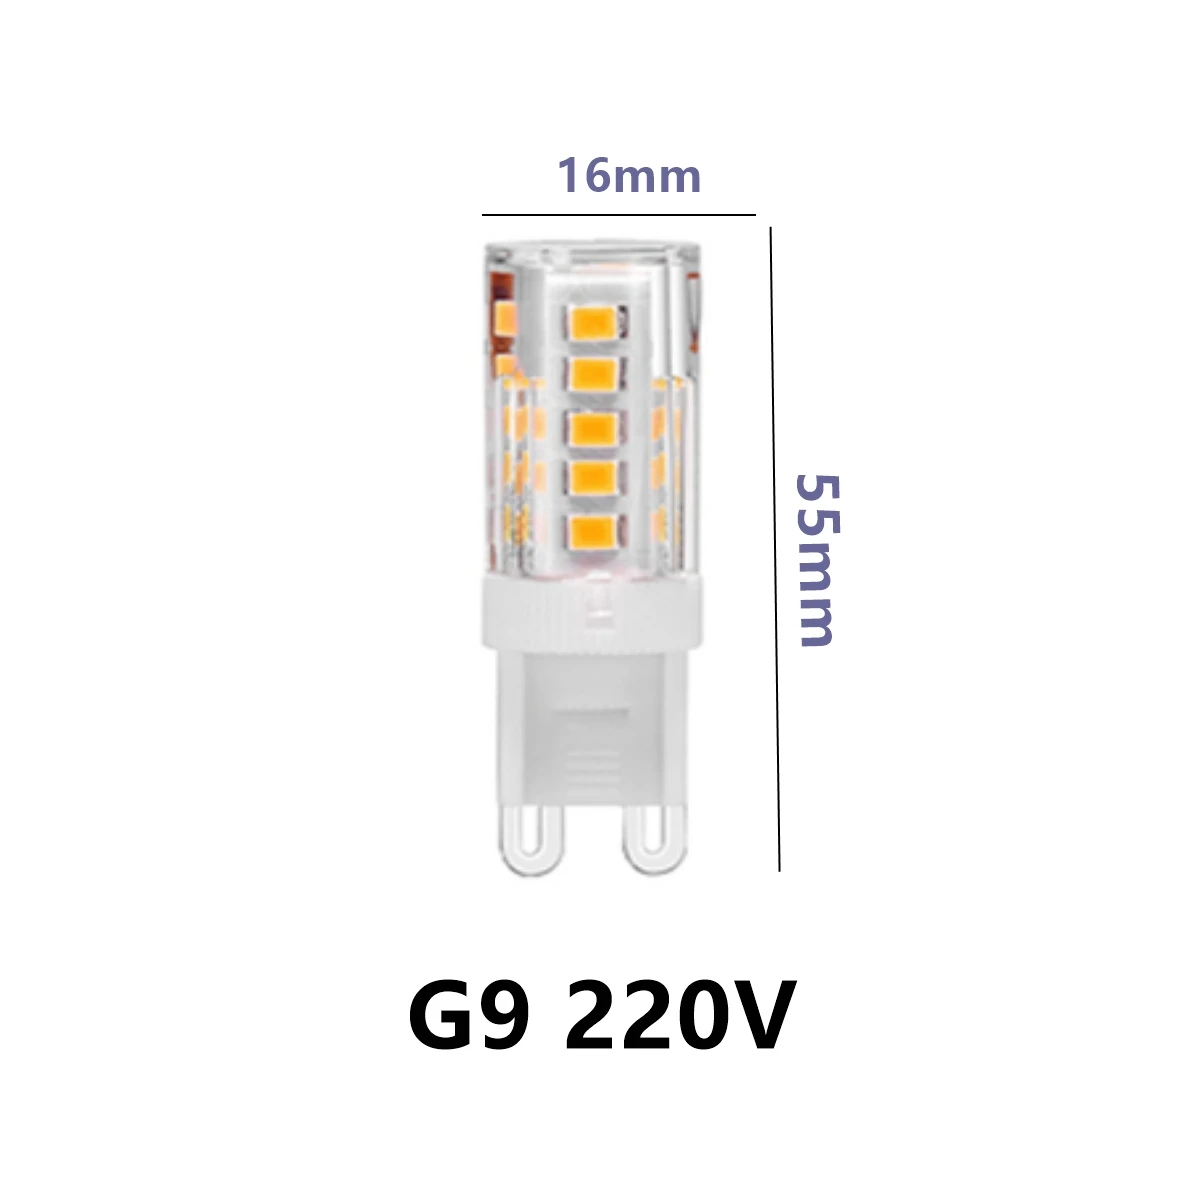 Nuovo prodotto LED Mini G9 Corn Light AC220V 3W luce bianca calda super luminosa non stroboscopica può sostituire la lampada alogena 20W 50W